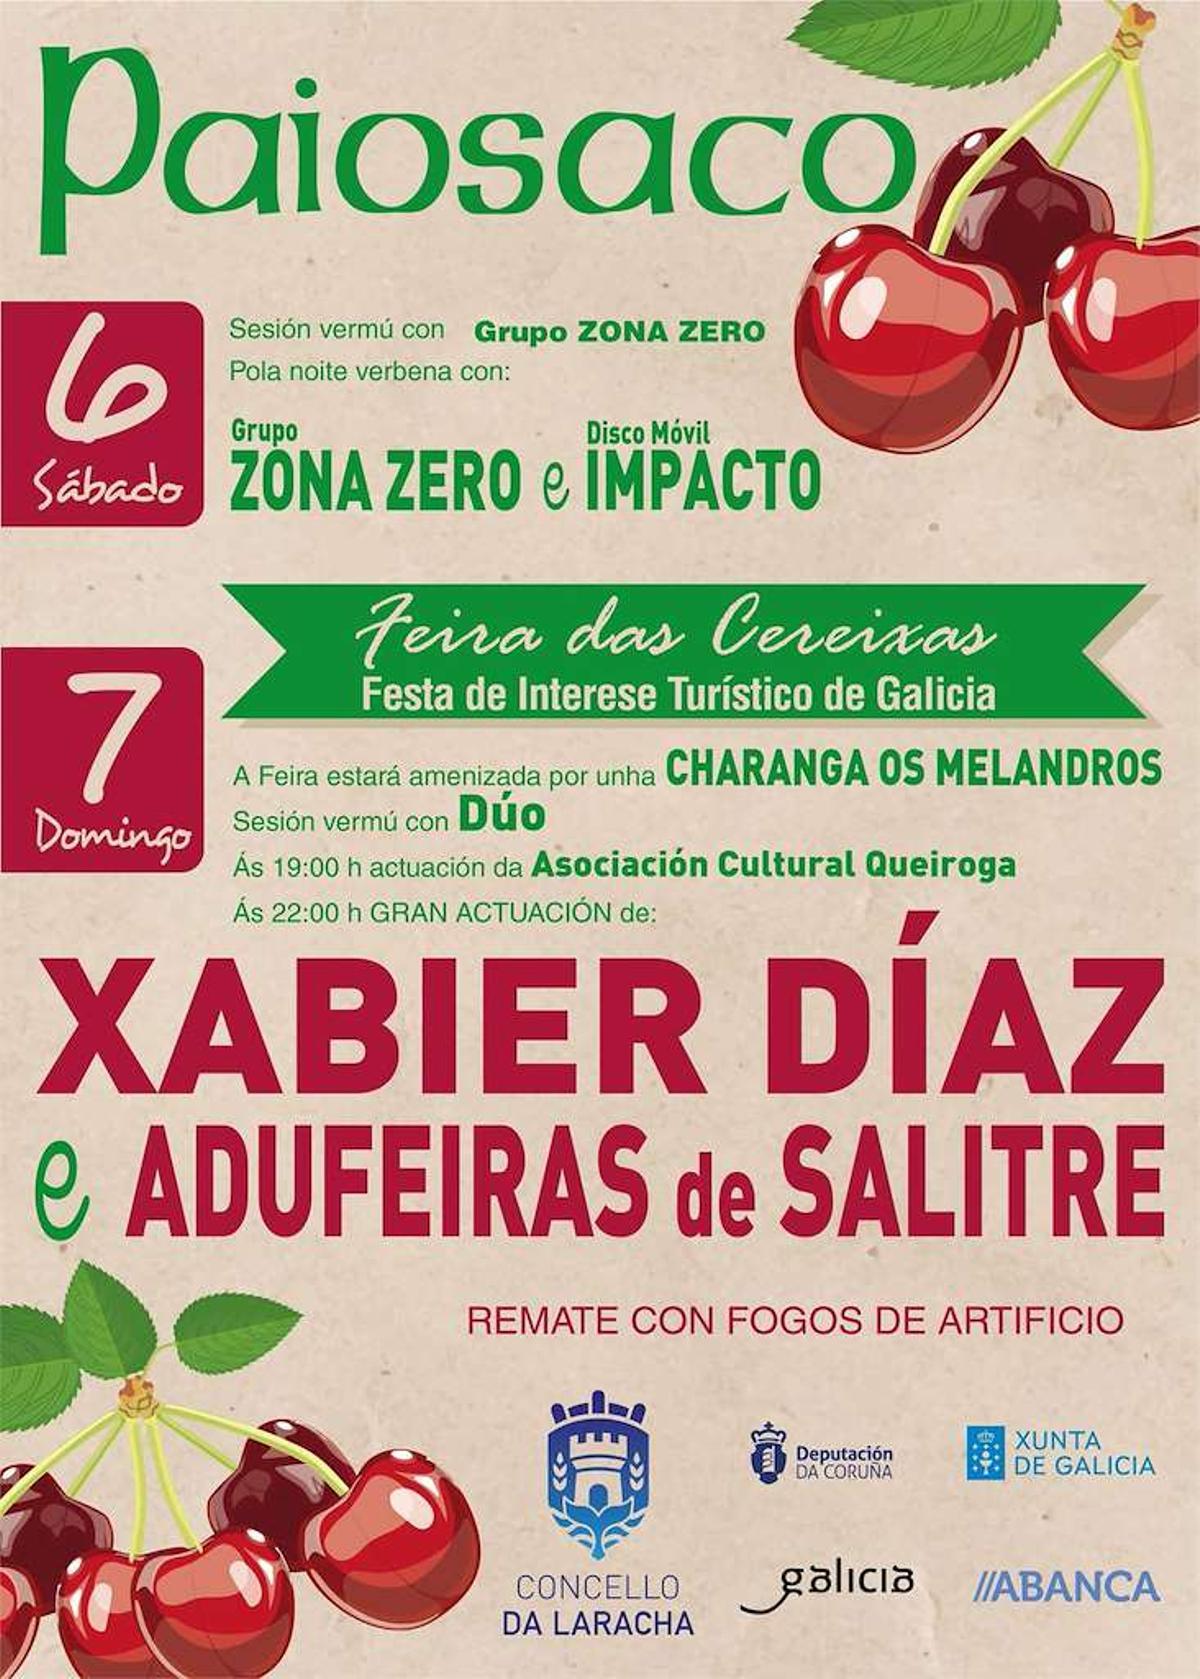 Cartel de la Fiesta de la Cereza en Paiosaco (Laracha).